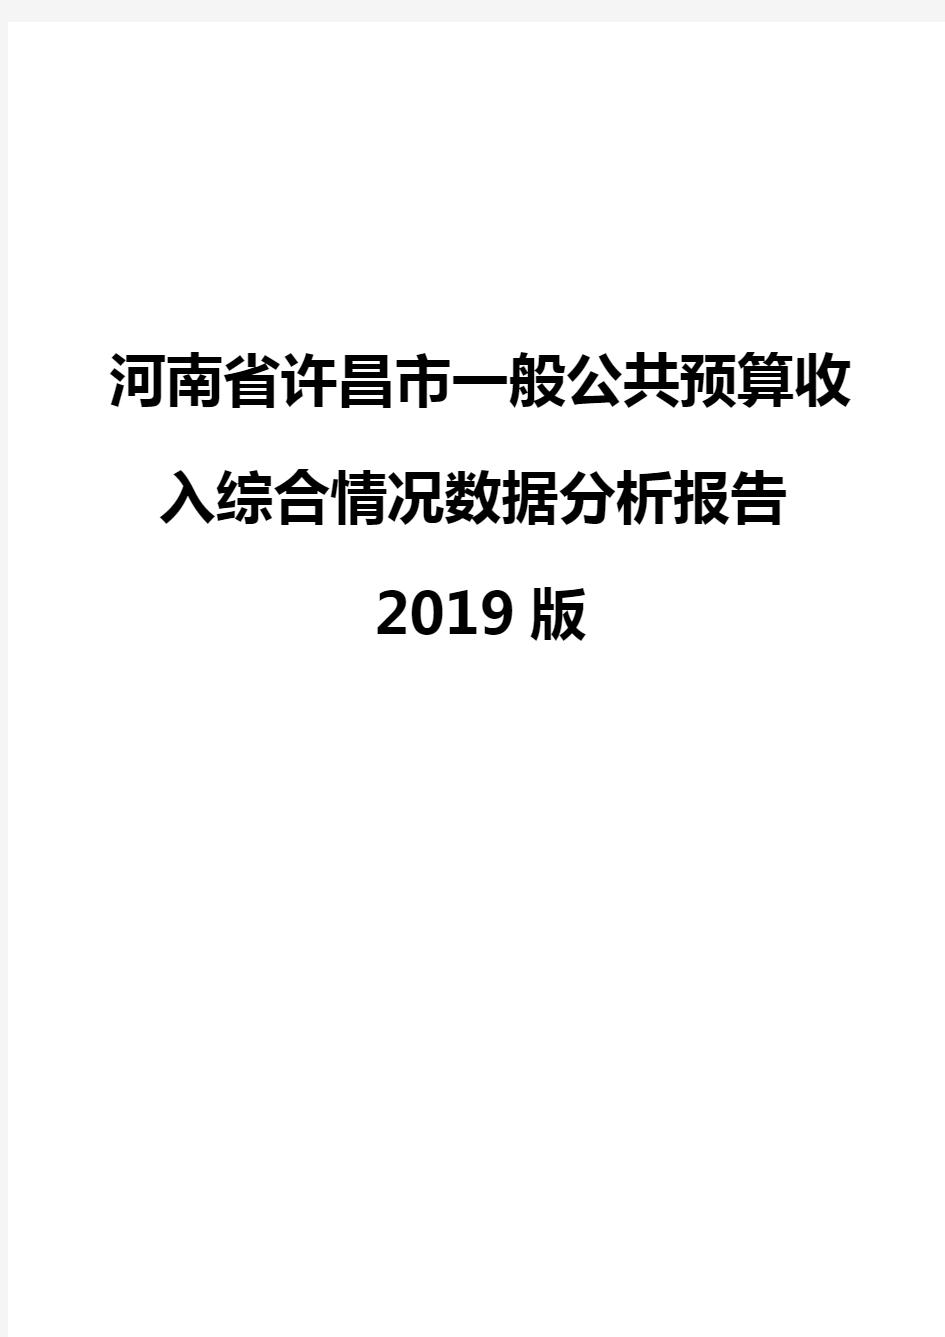 河南省许昌市一般公共预算收入综合情况数据分析报告2019版